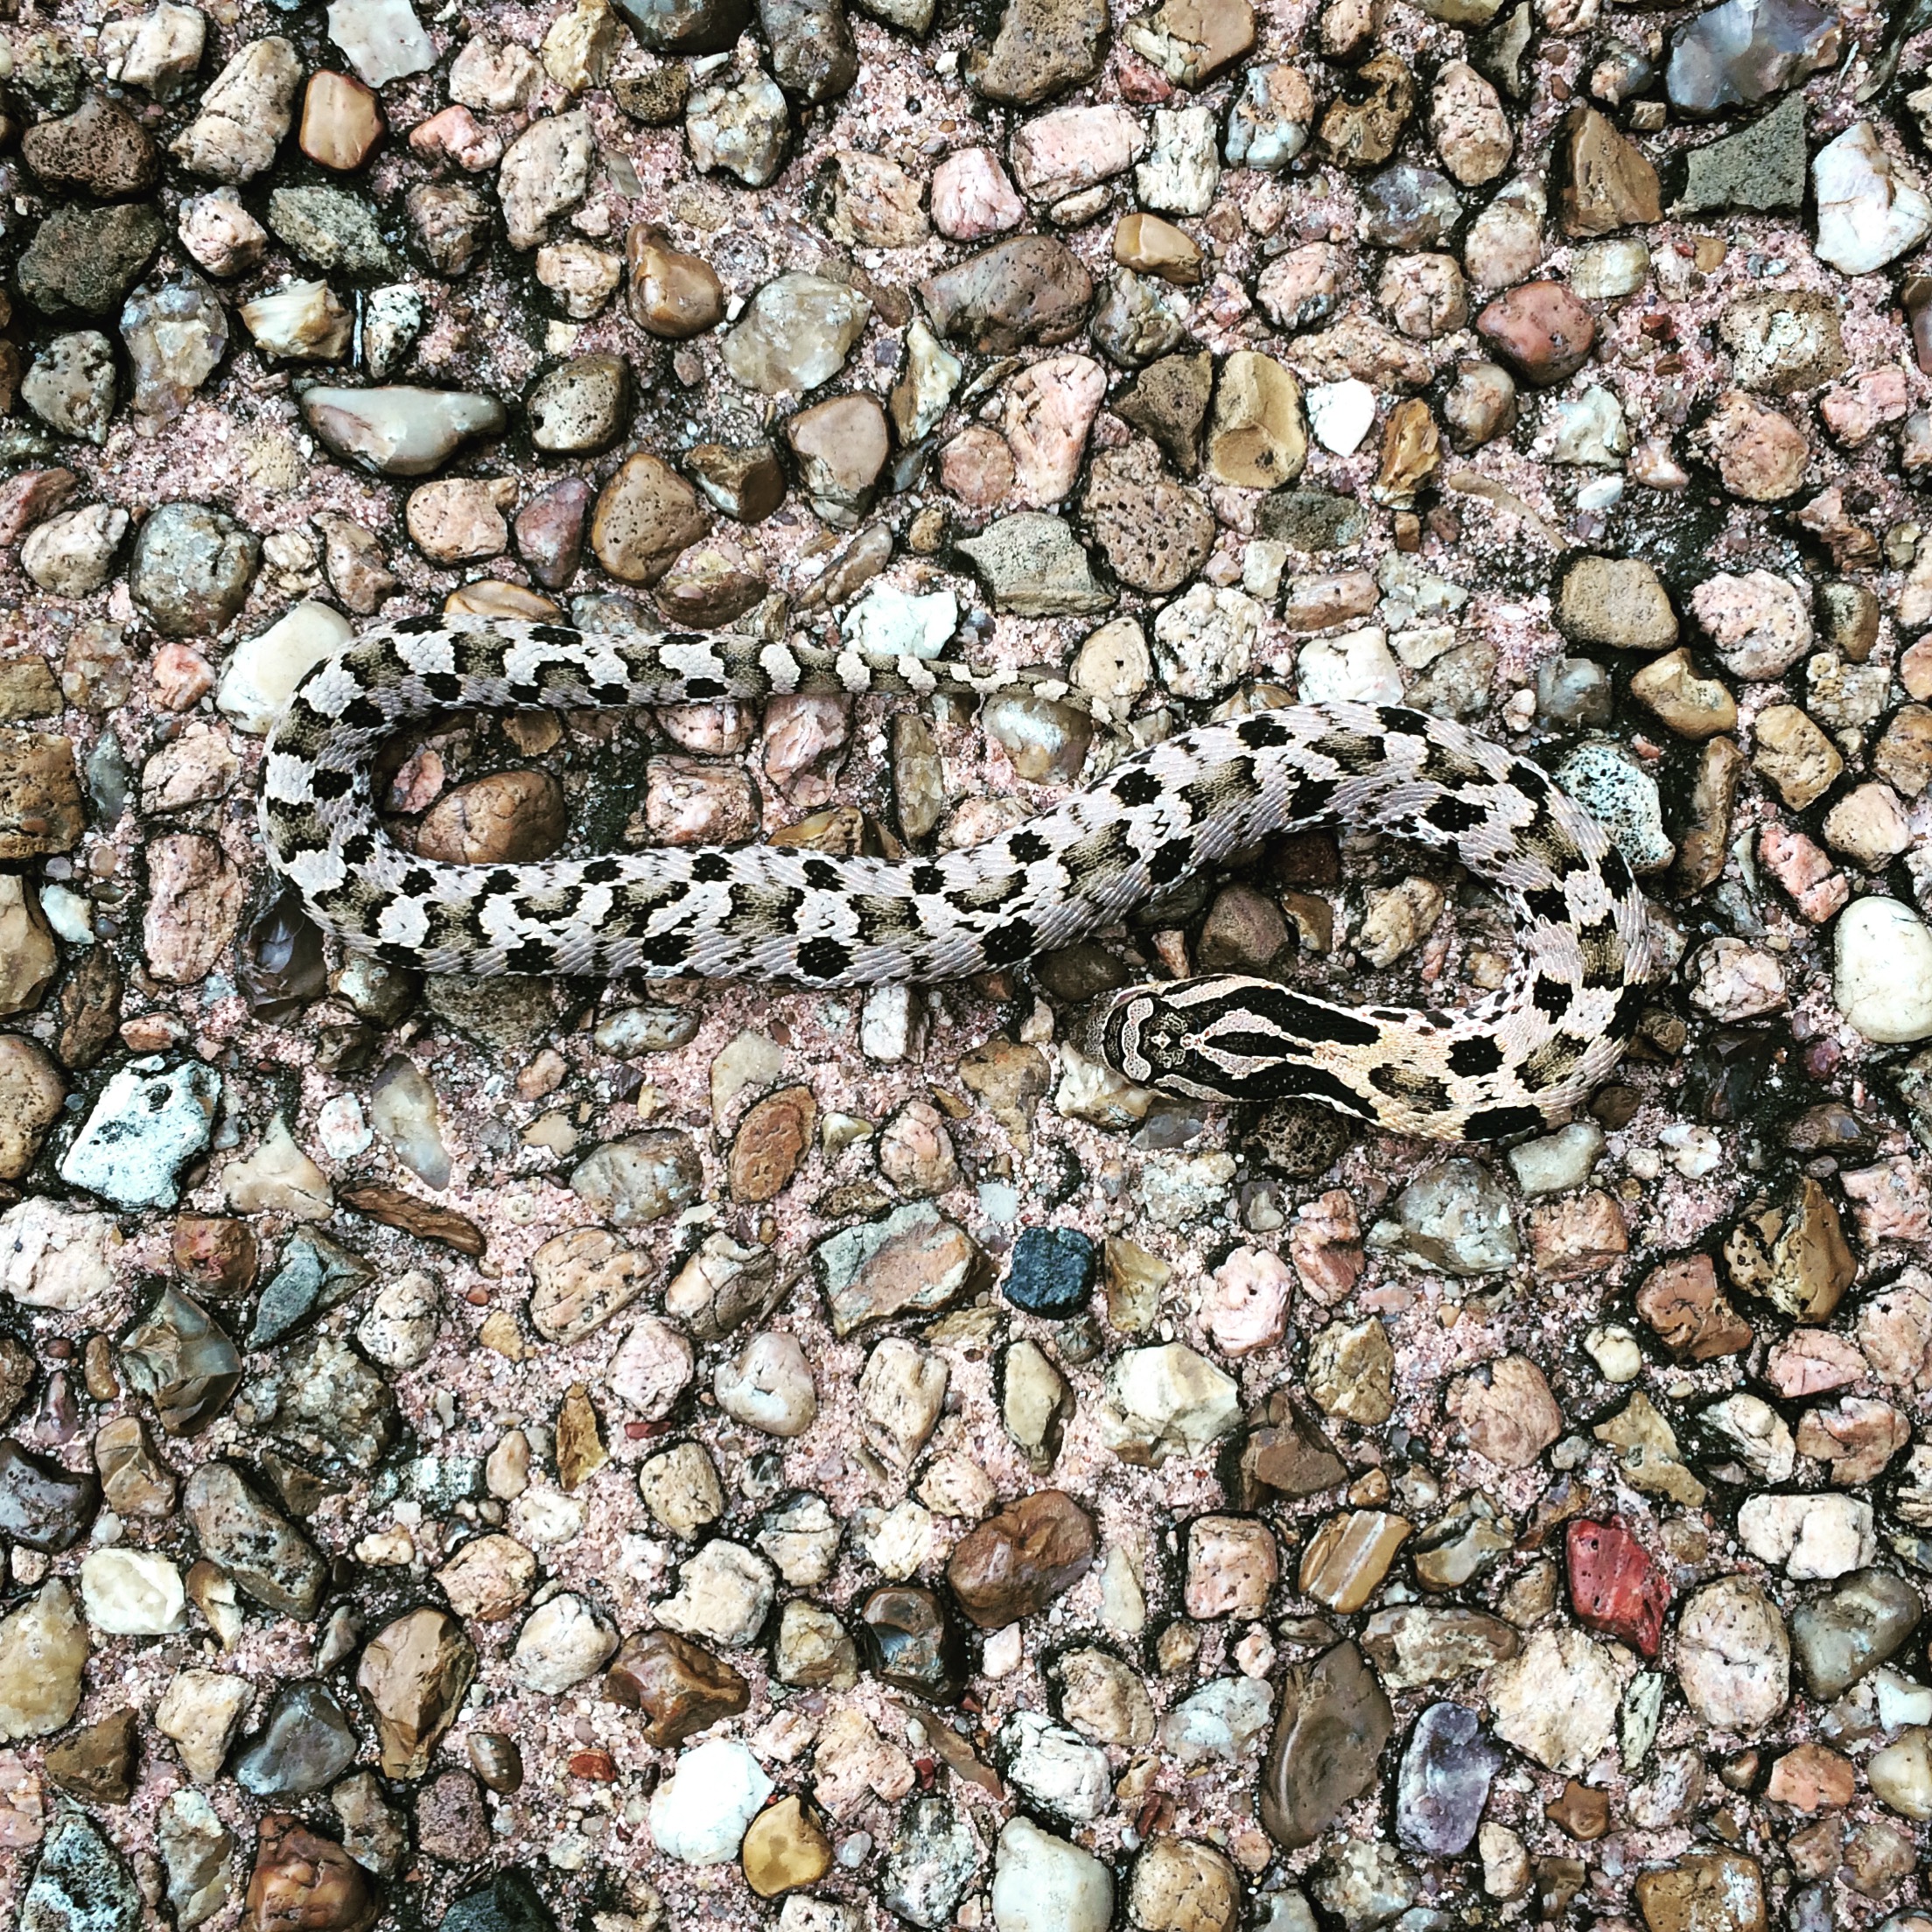  A snake in the garden—Bayou Bend 